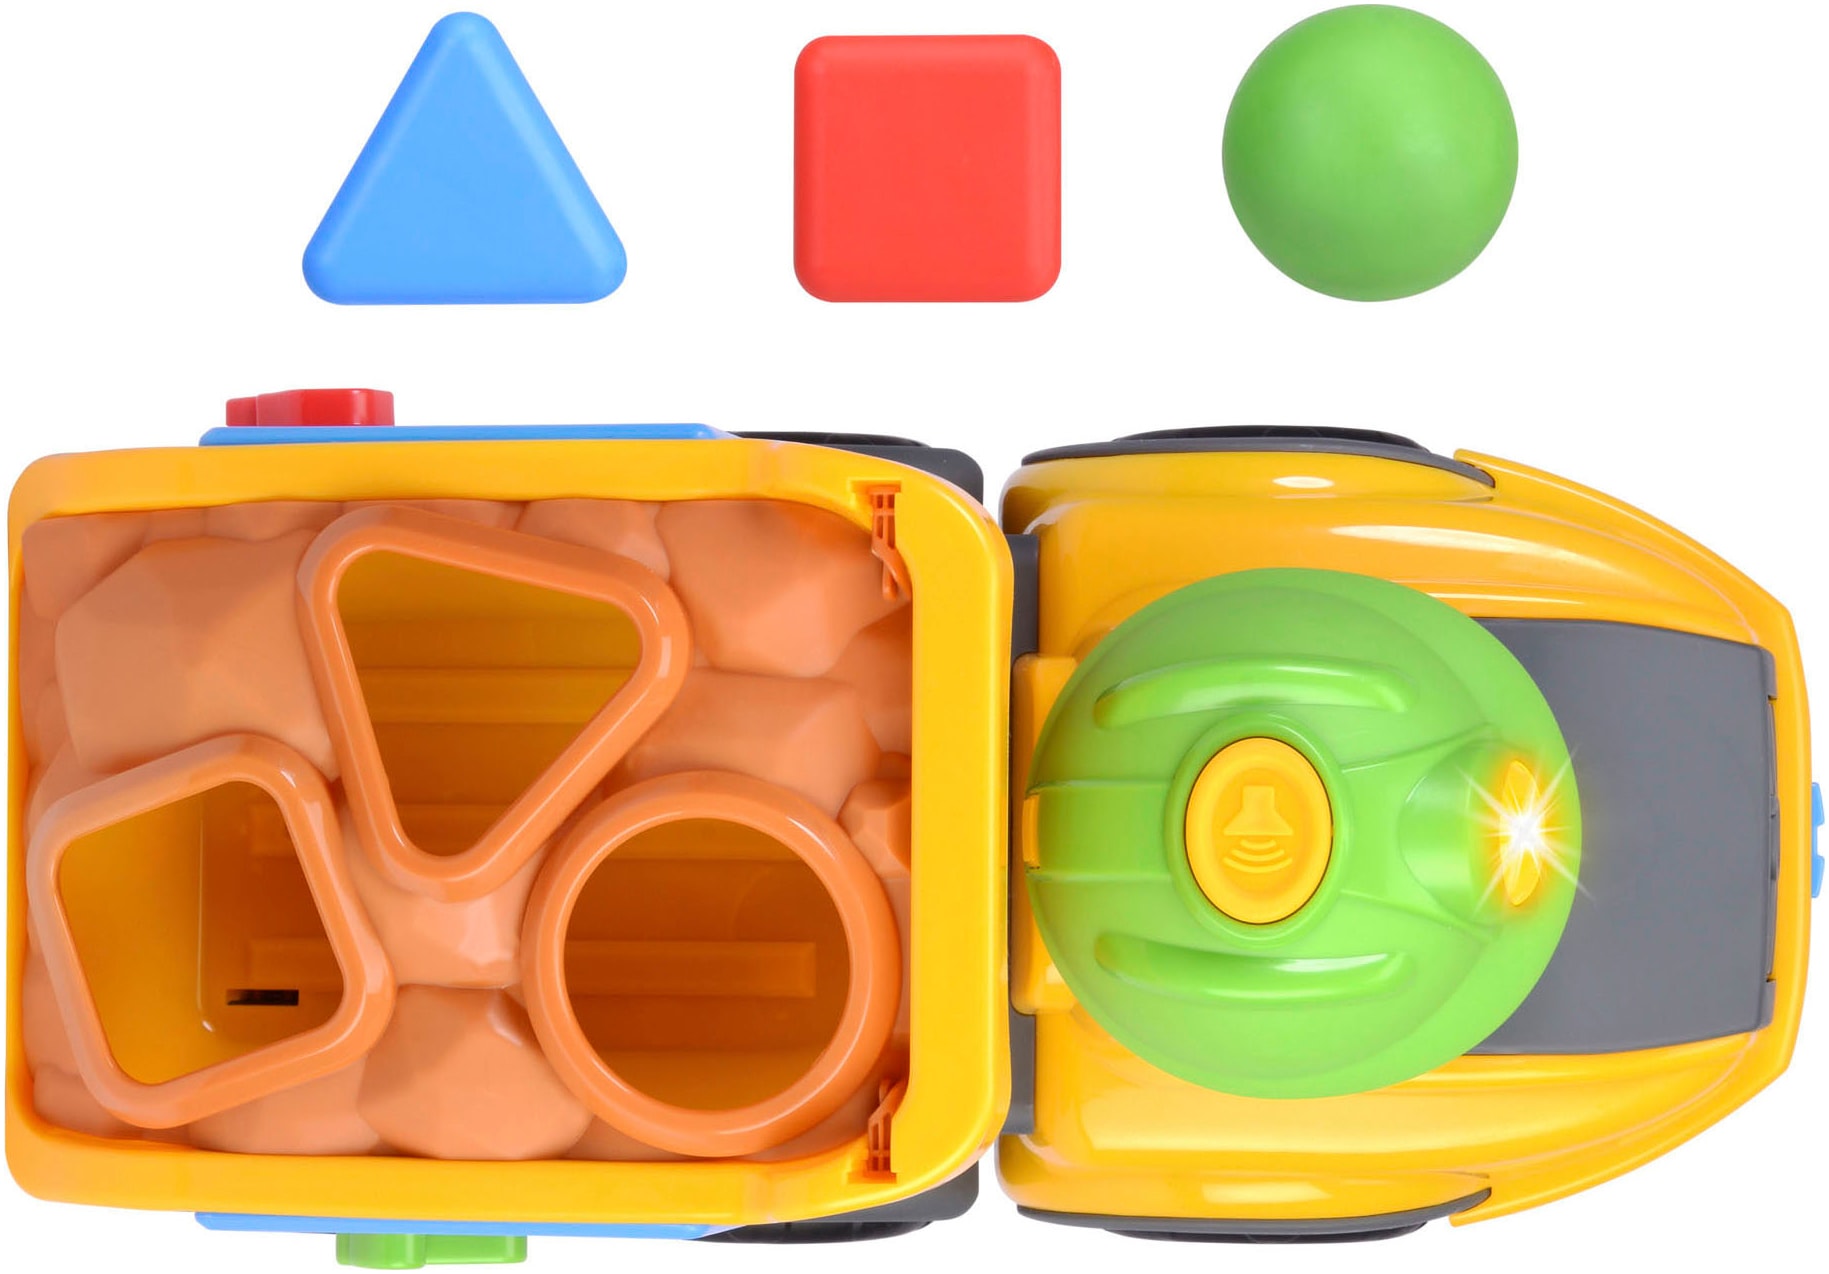 Dickie Toys Steckspielzeug »ABC Harry Hauler Sortierfahrzeug«, mit Licht- und Soundeffekt